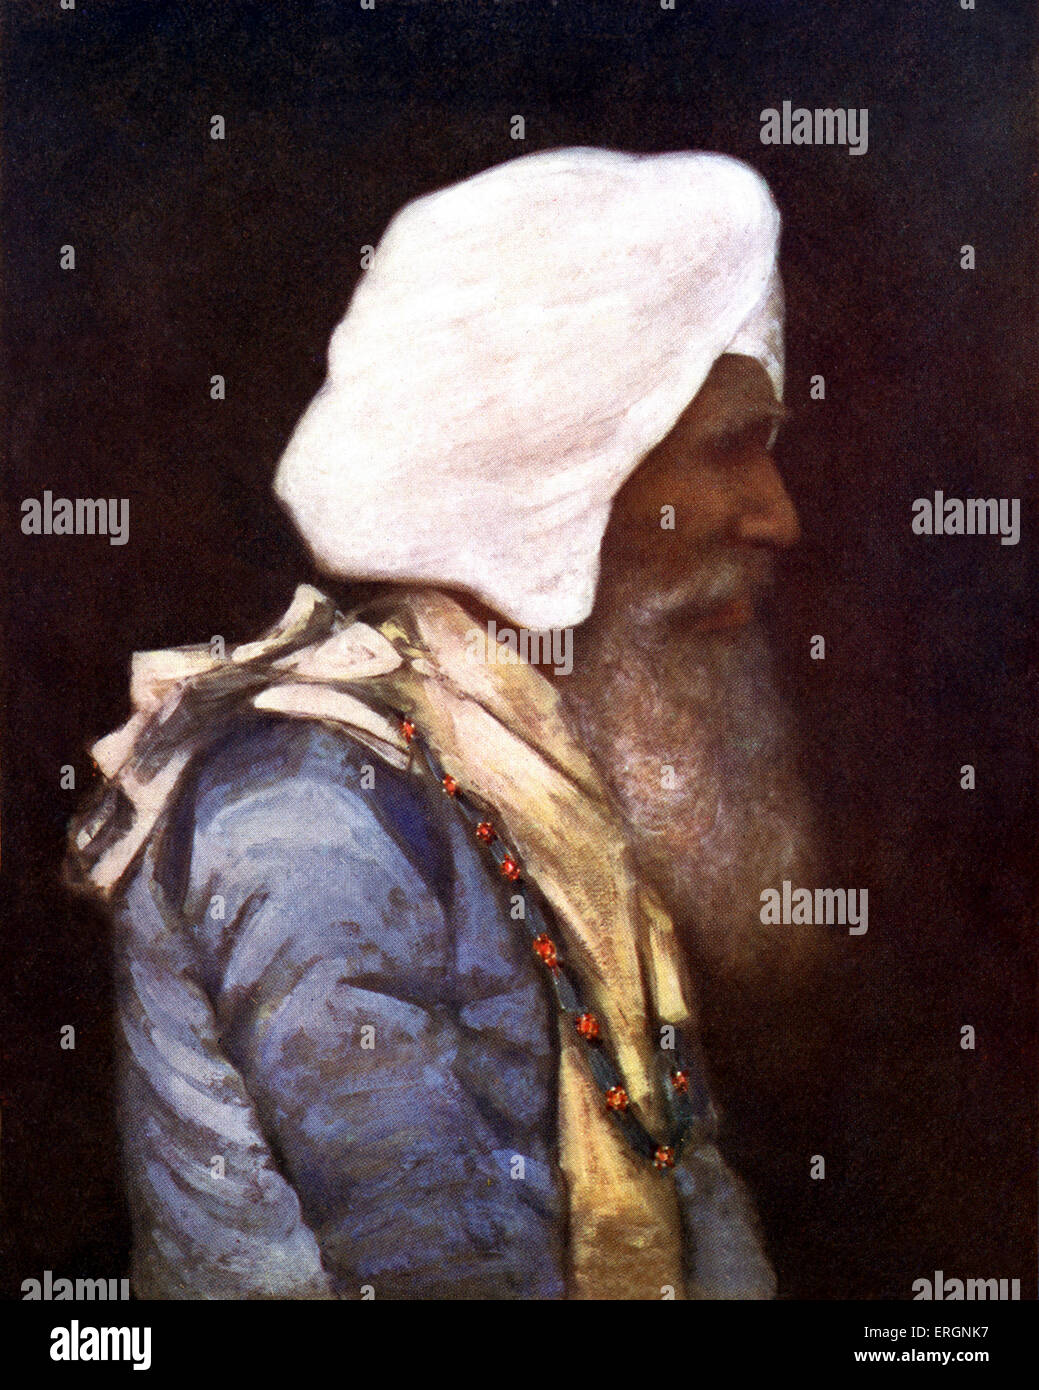 Le Maharaja de Nabha, un état de la Maison Royale des Sikhs au Pendjab, en Inde. Hira Maharaja Singh, 18 décembre 1843 - 24 Décembre Banque D'Images